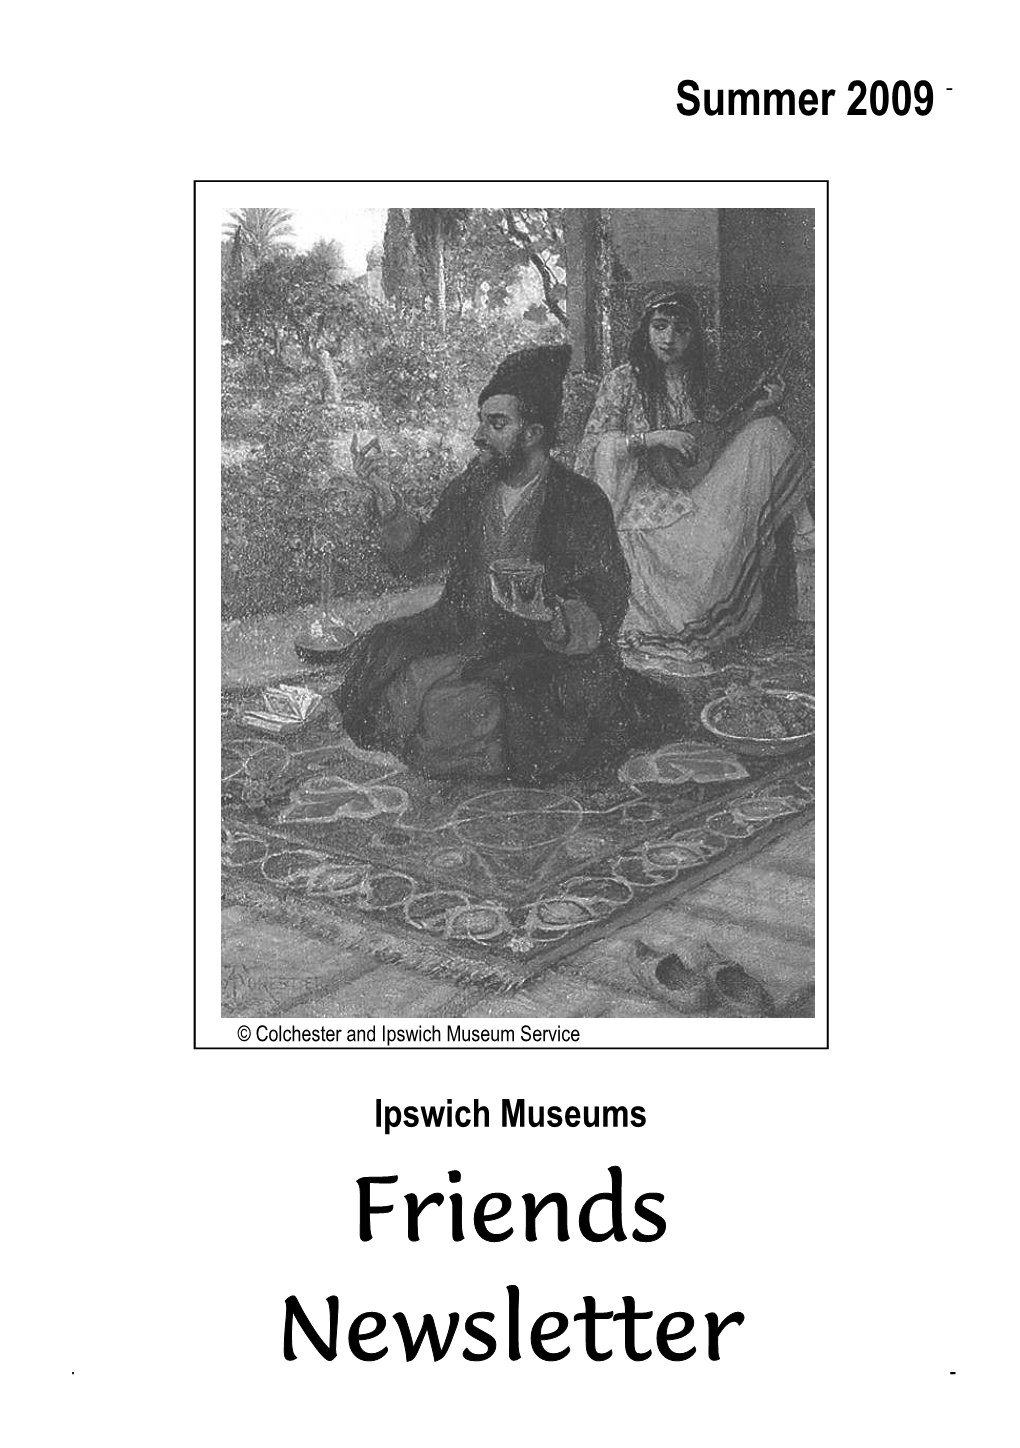 Friends Newsletter 1 FOIM Newsletter - Summer 2009